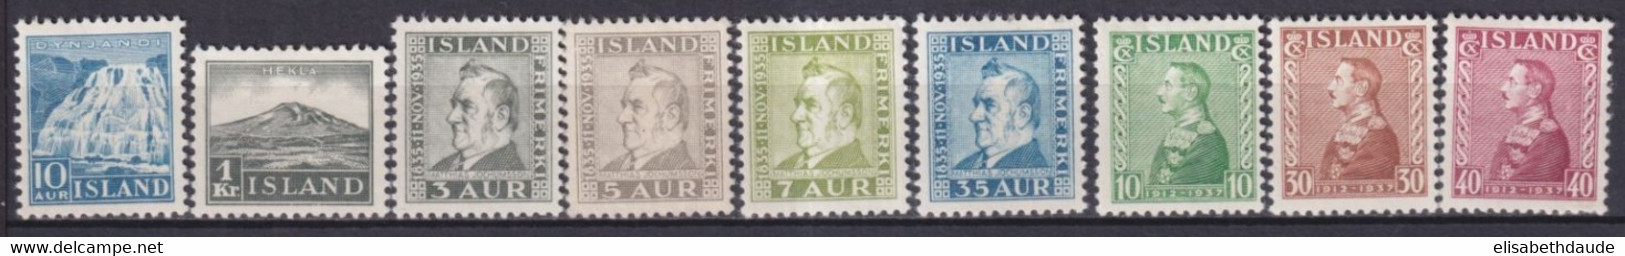 ISLANDE - 1935/1937 - YVERT N° 158/166 * MLH - COTE = 109 EUR. - Nuevos